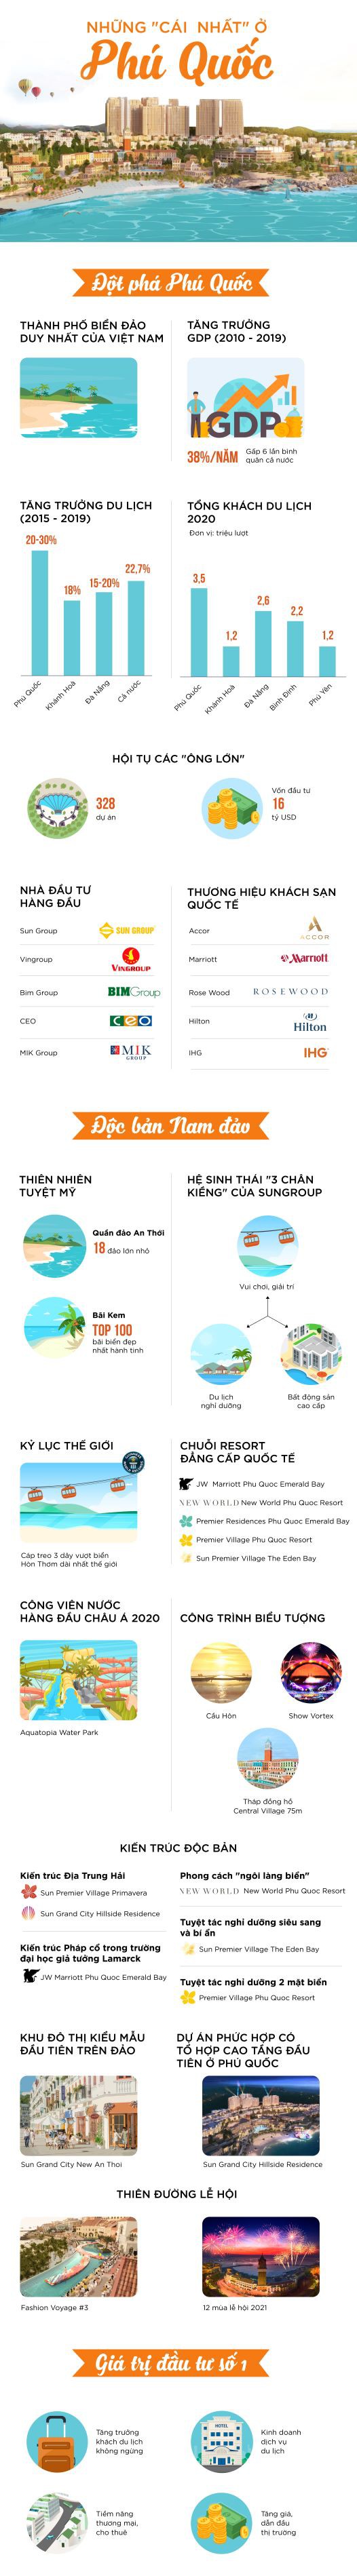 infographic-nhung-cai-nhat-o-phu-quoc-1-1620204632.jpg